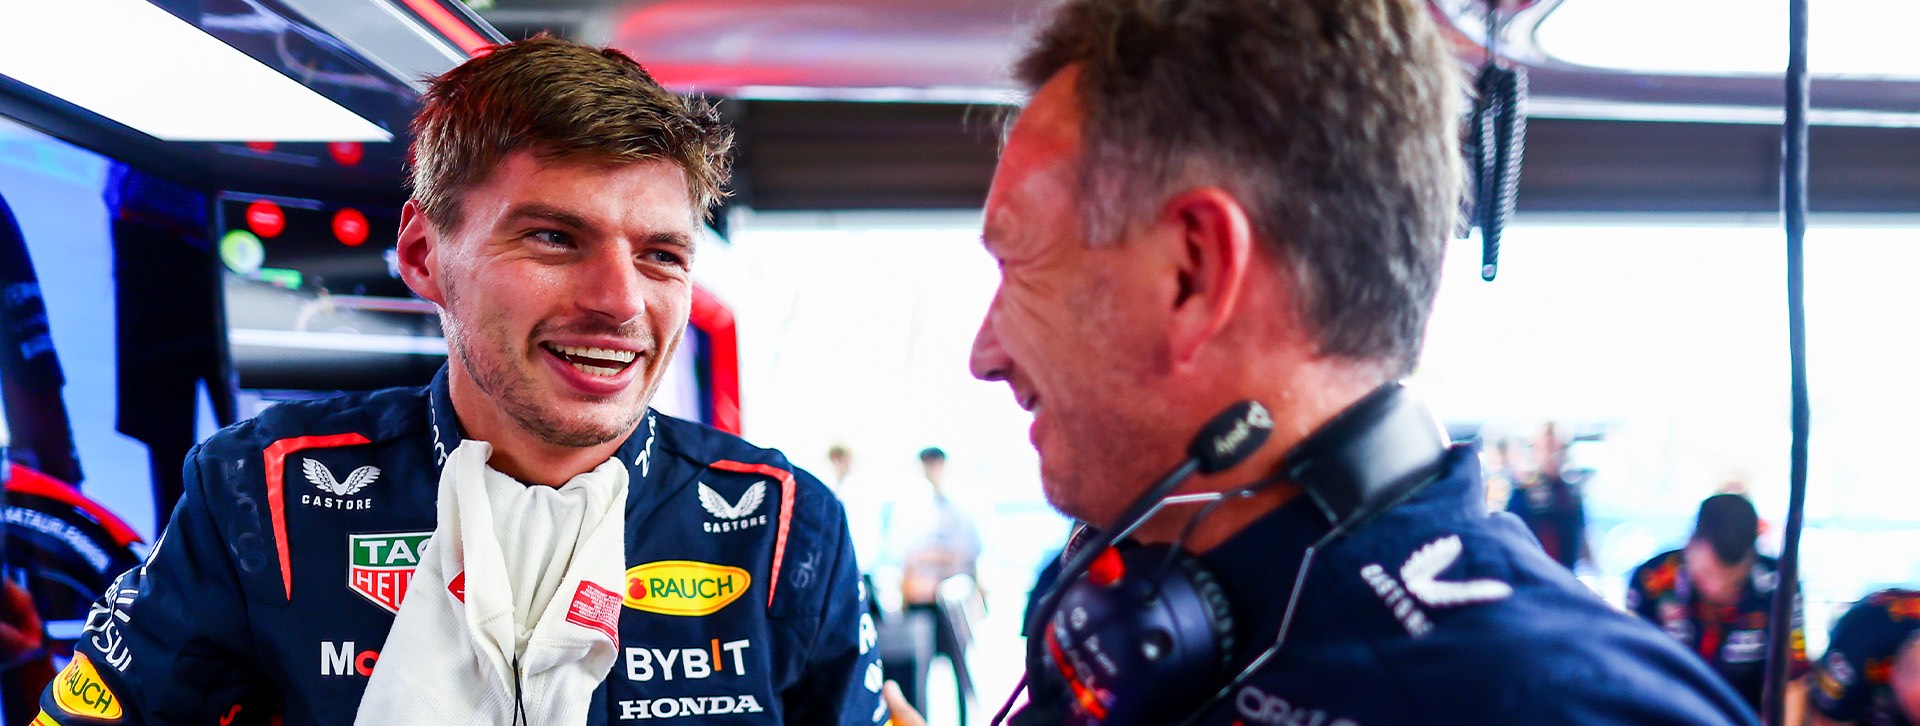 Max Verstappen Pede Red Bull Dalam Kondisi Terbaik di GP Jepang